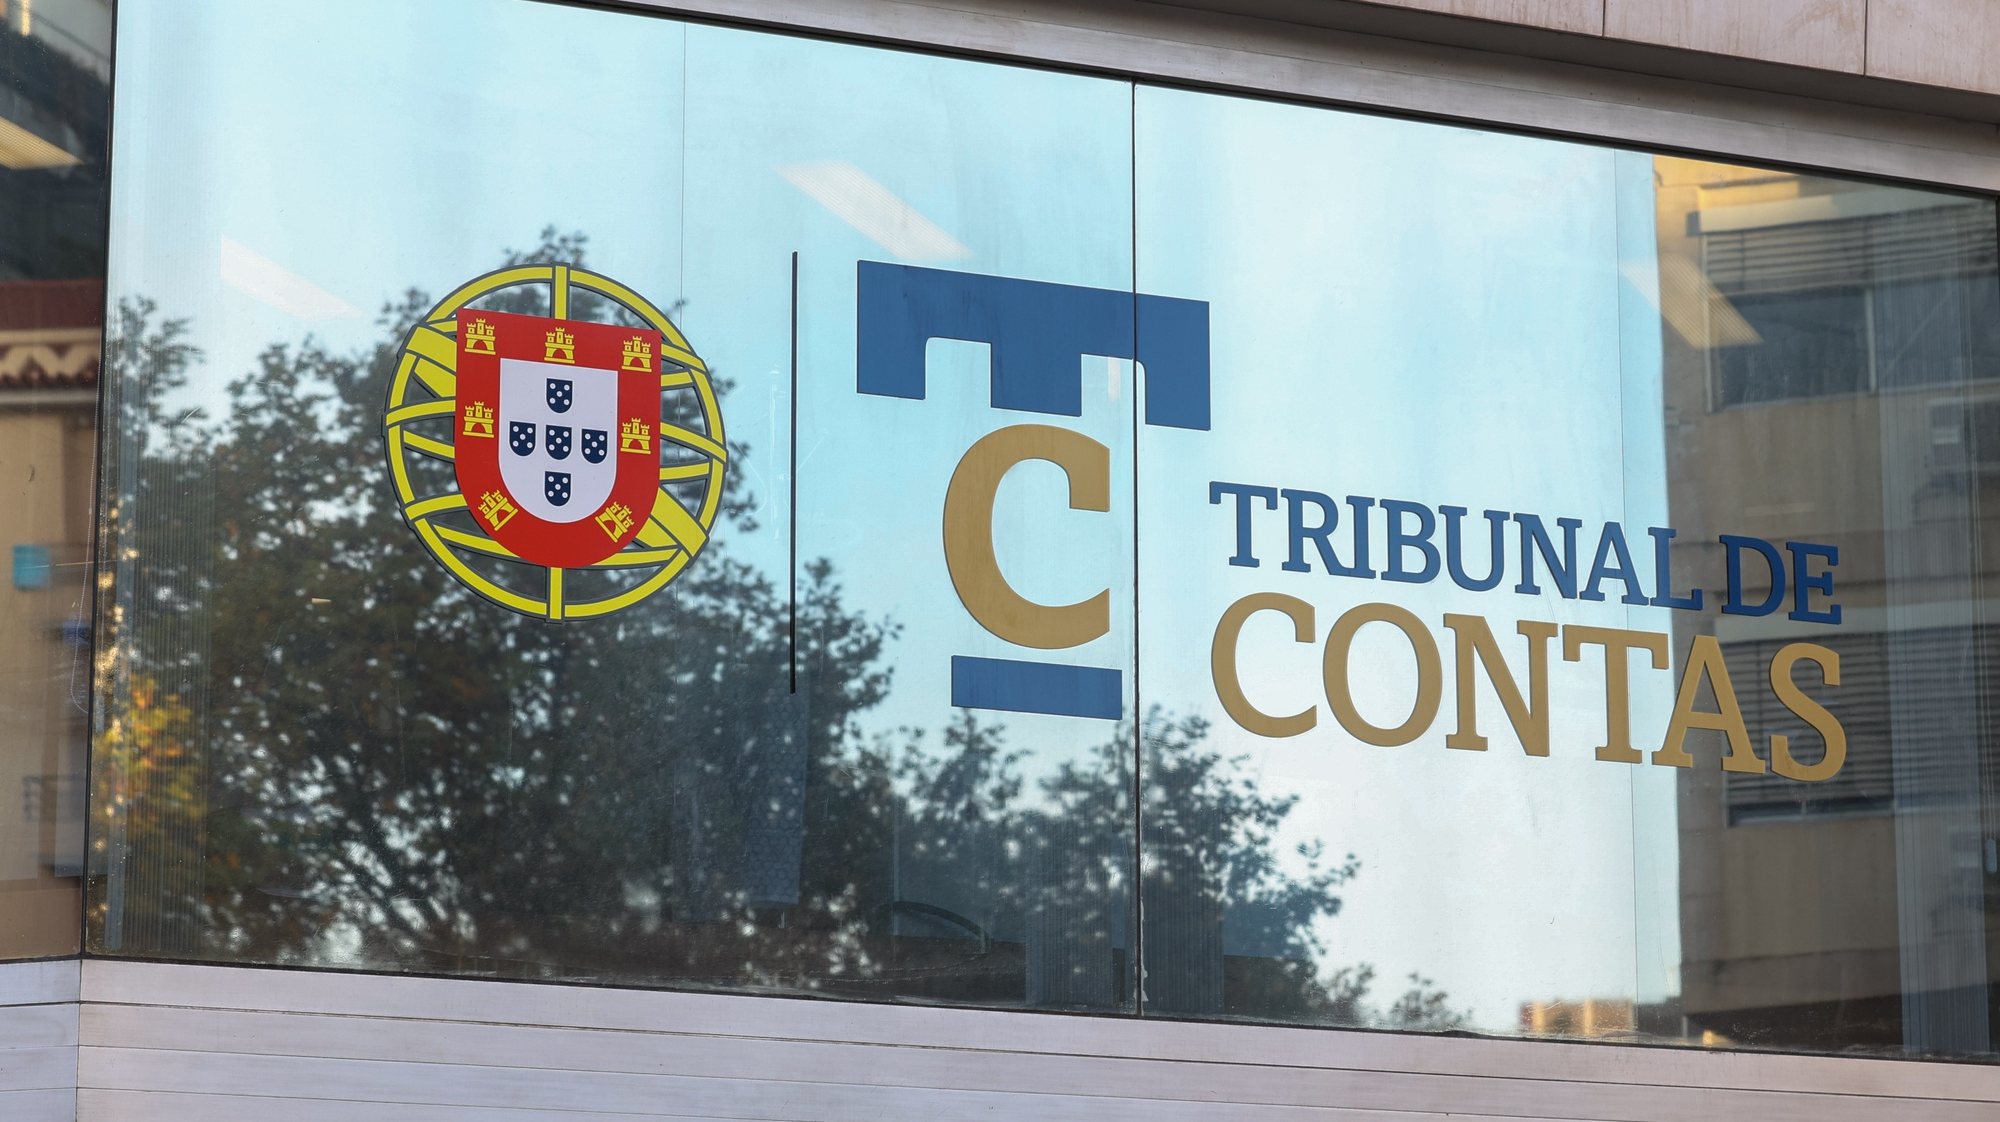 Fachada do Tribunal de Contas, em Lisboa 25 de novembro de 2022. ANTÓNIO COTRIM/LUSA